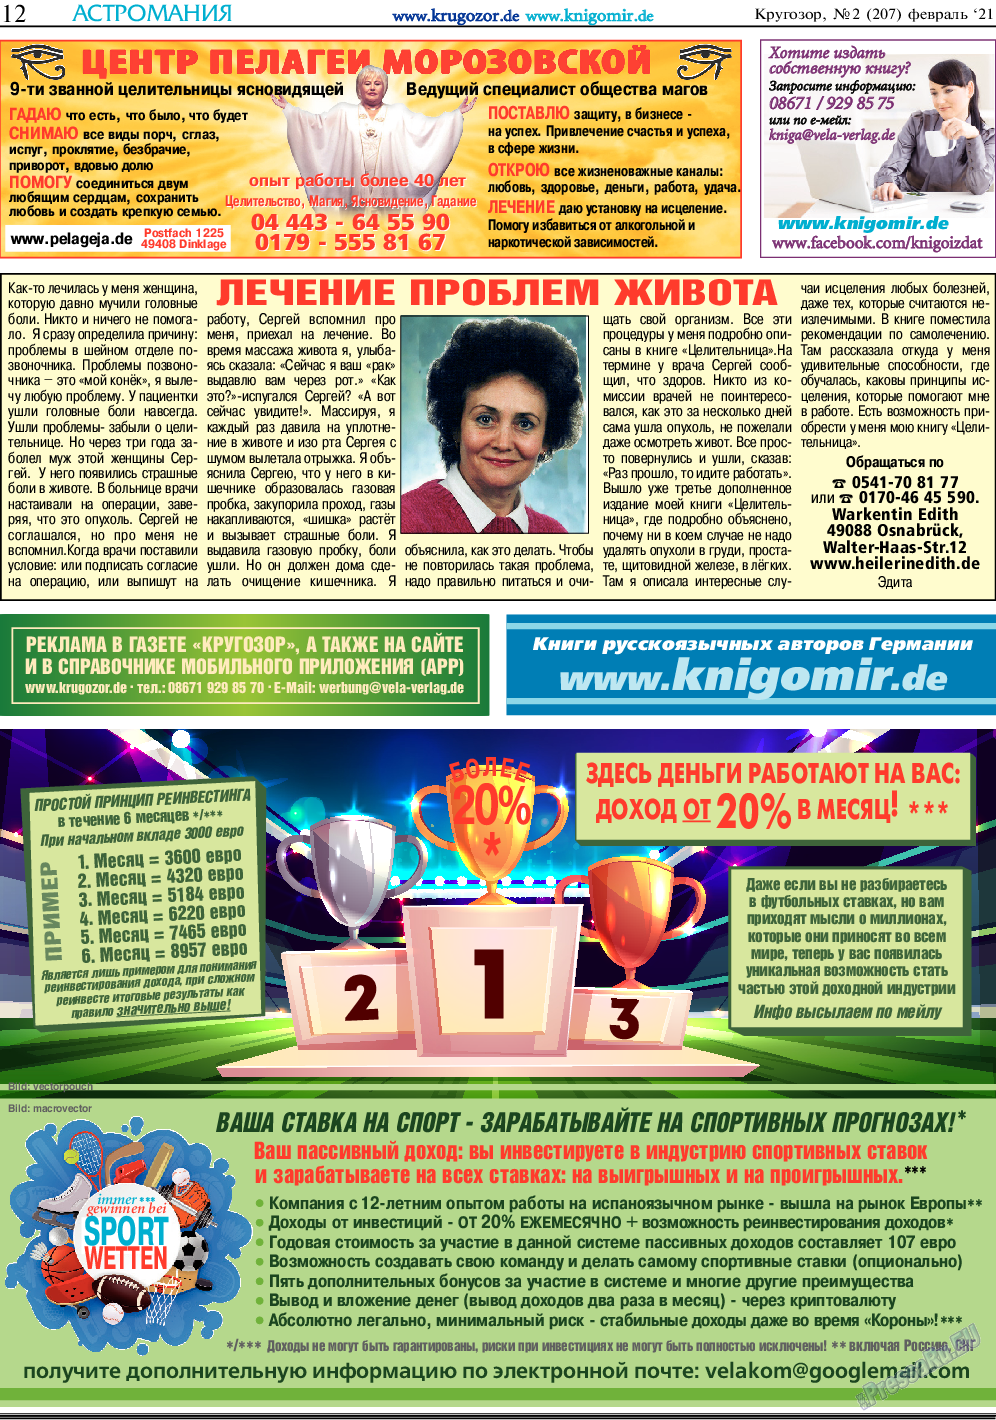 Кругозор, газета. 2021 №2 стр.12